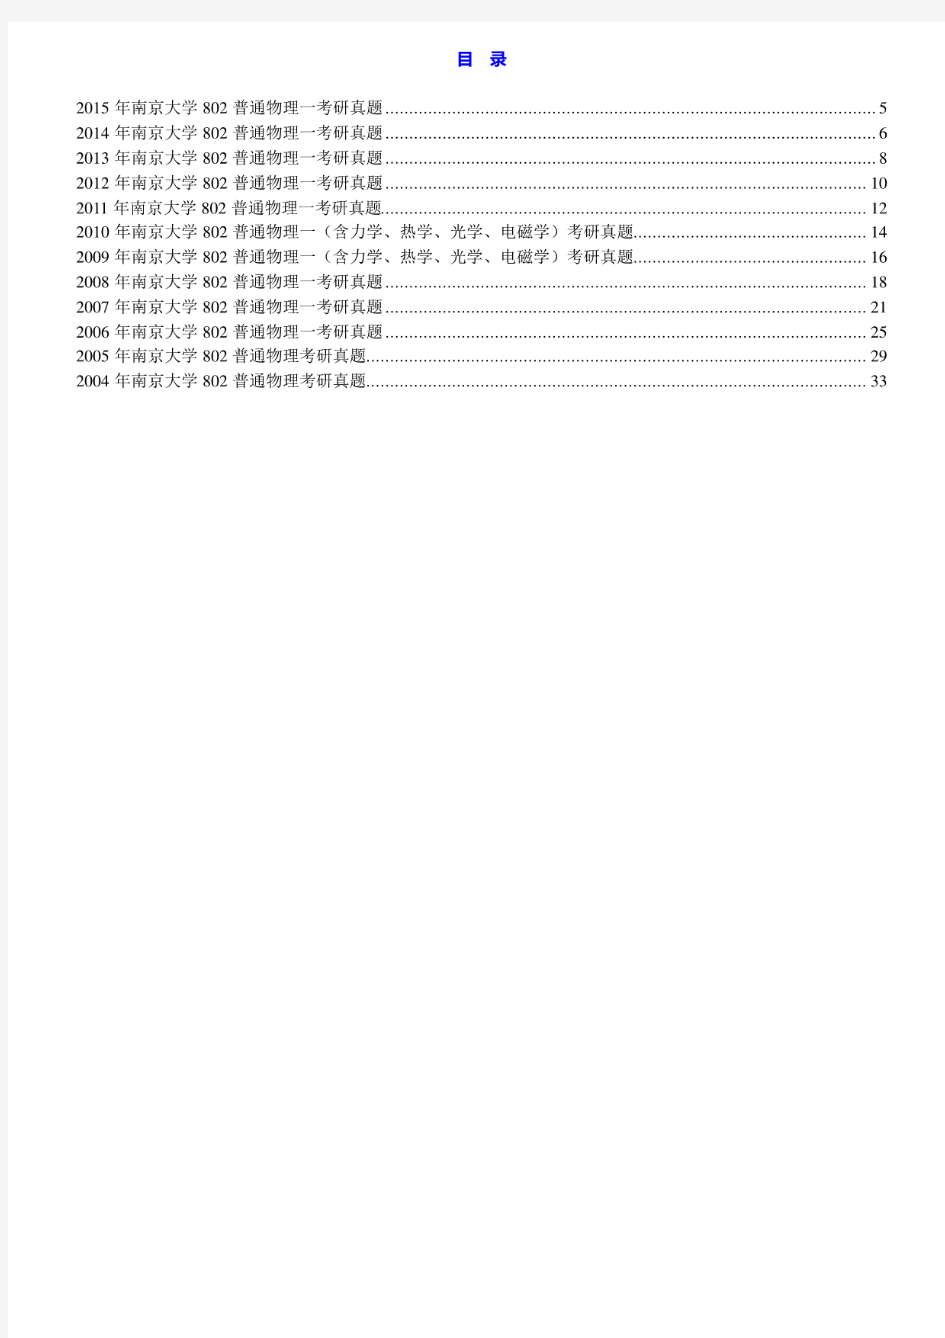 南京大学802普通物理一(含力学、热学、光学、电磁学)04-15年